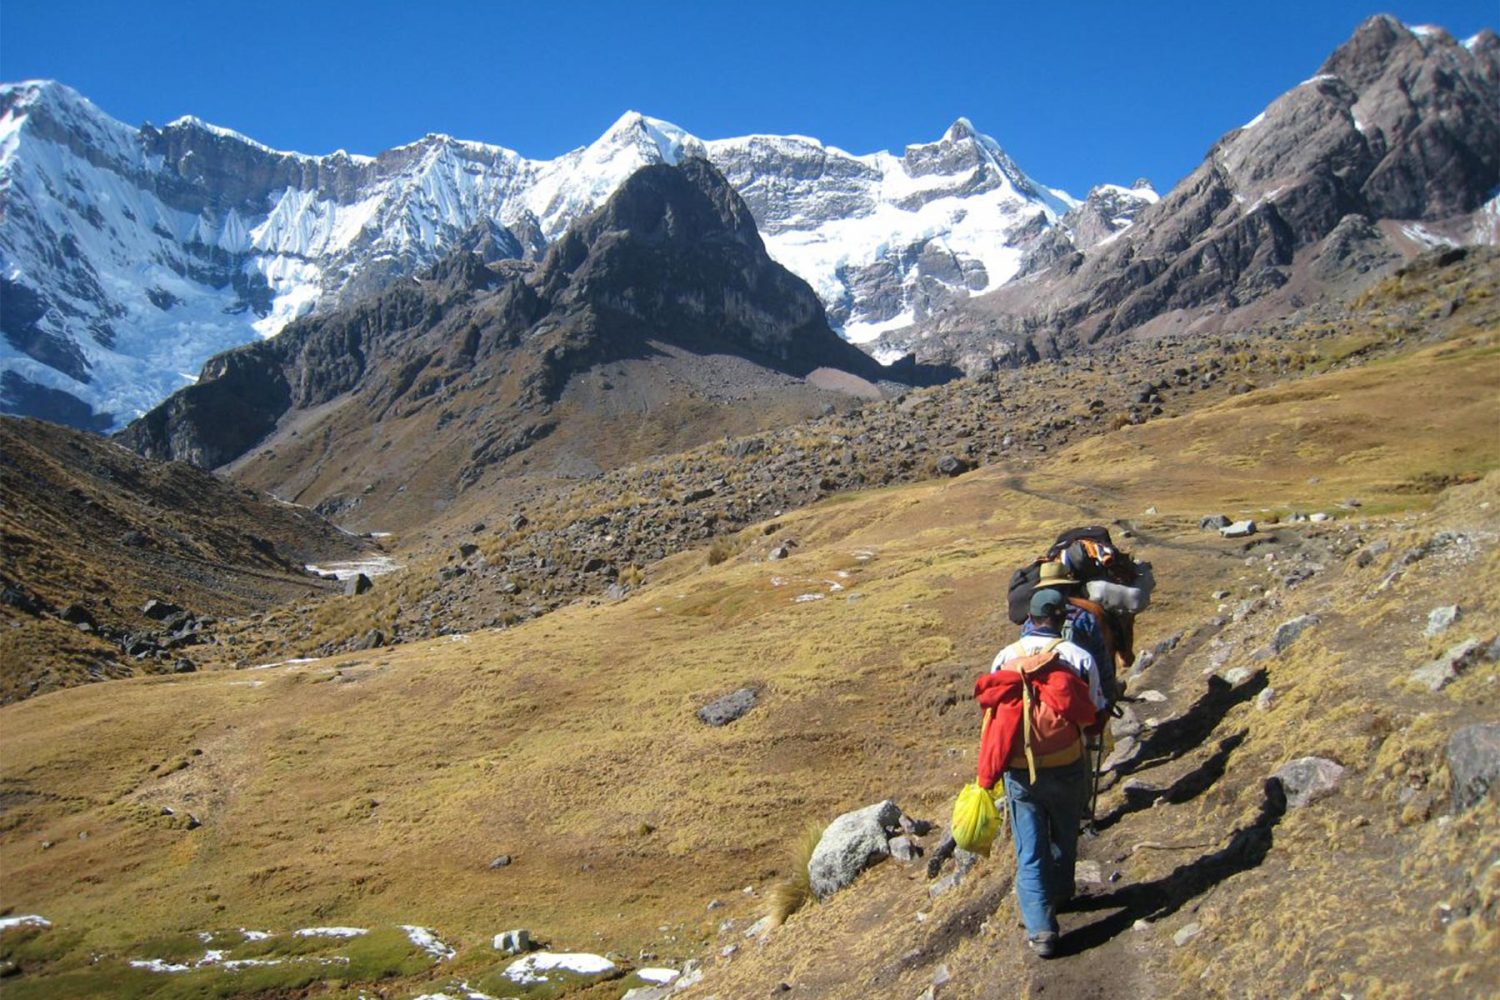 Ausangate - Los Andes Travel